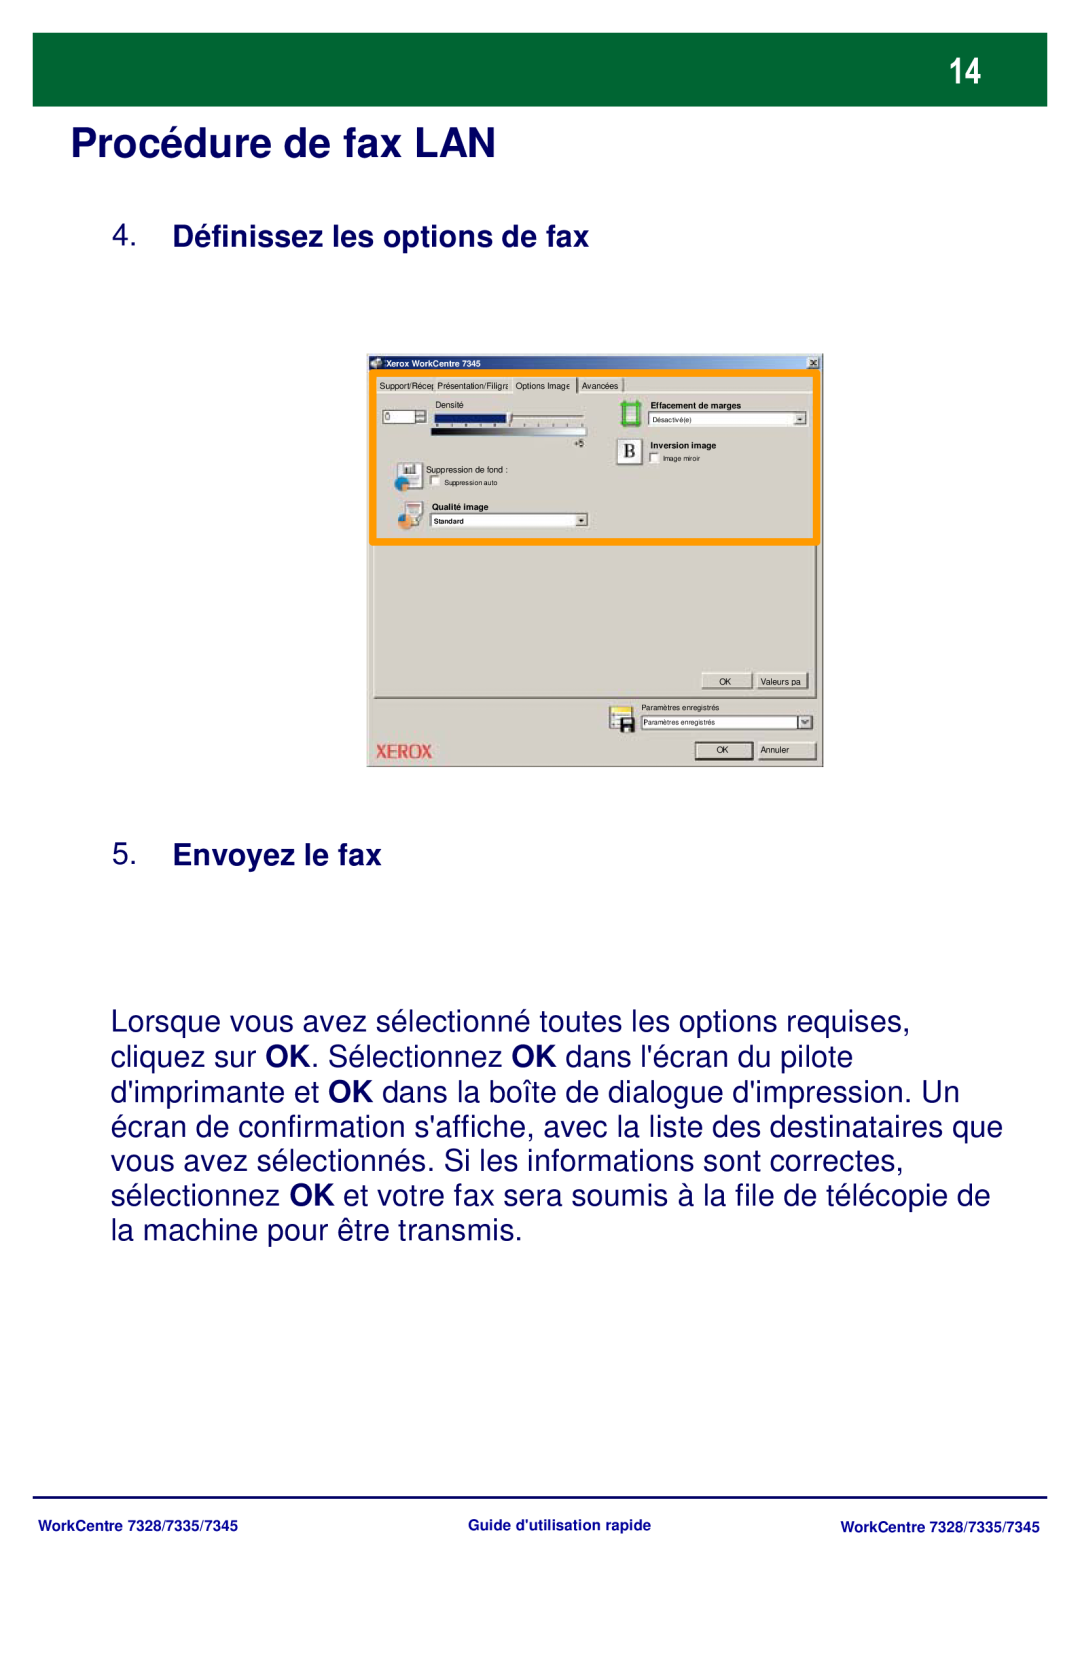 Xerox 7345 Procédure de fax LAN, 4.Définissez les options de fax, Envoyez le fax, Effacement de marges, Inversion image 